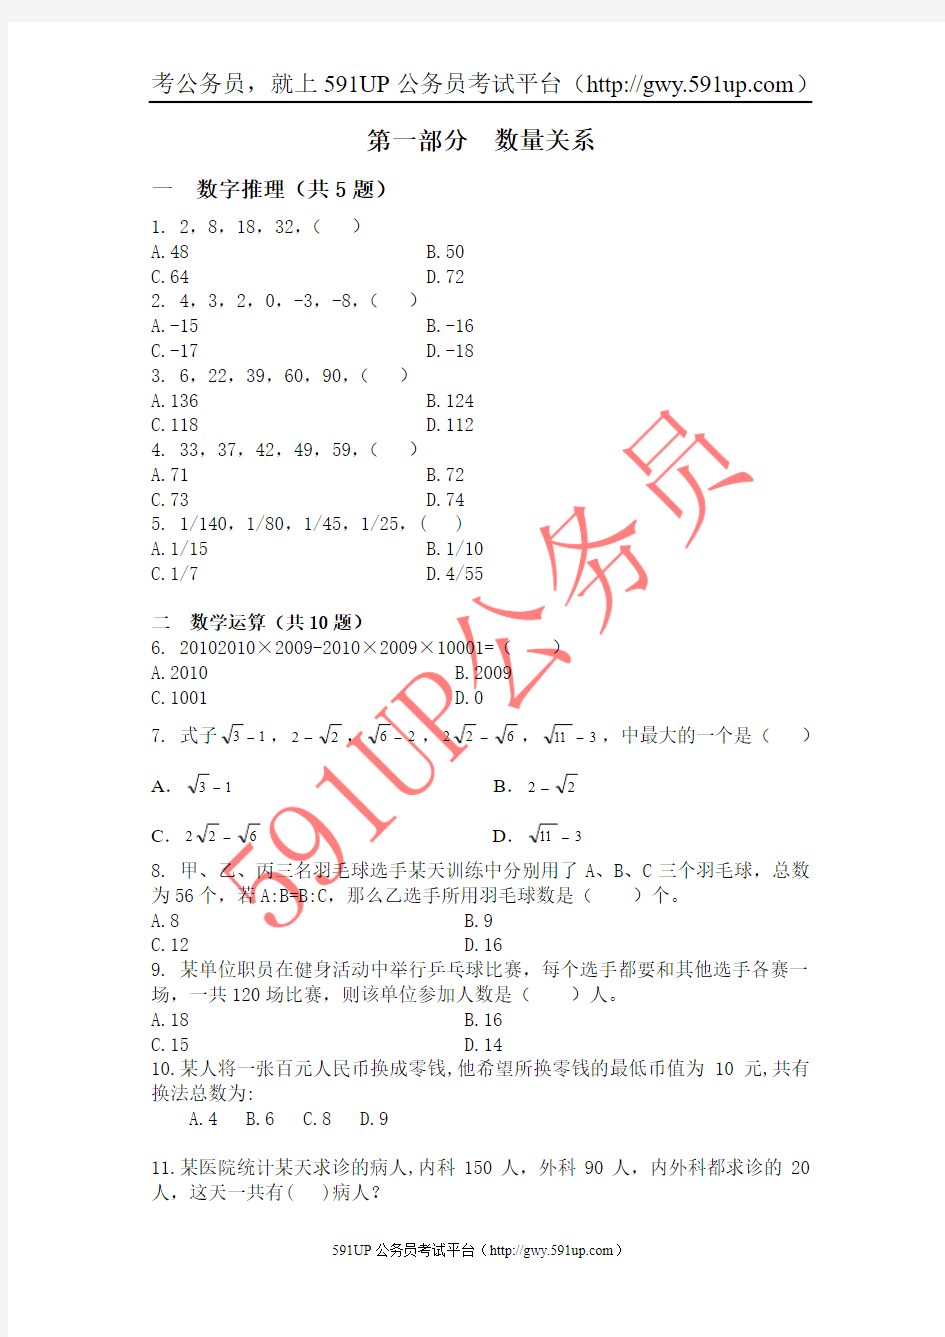 2009年12月6日四川省公务员考试行测真题及答案解析(全)